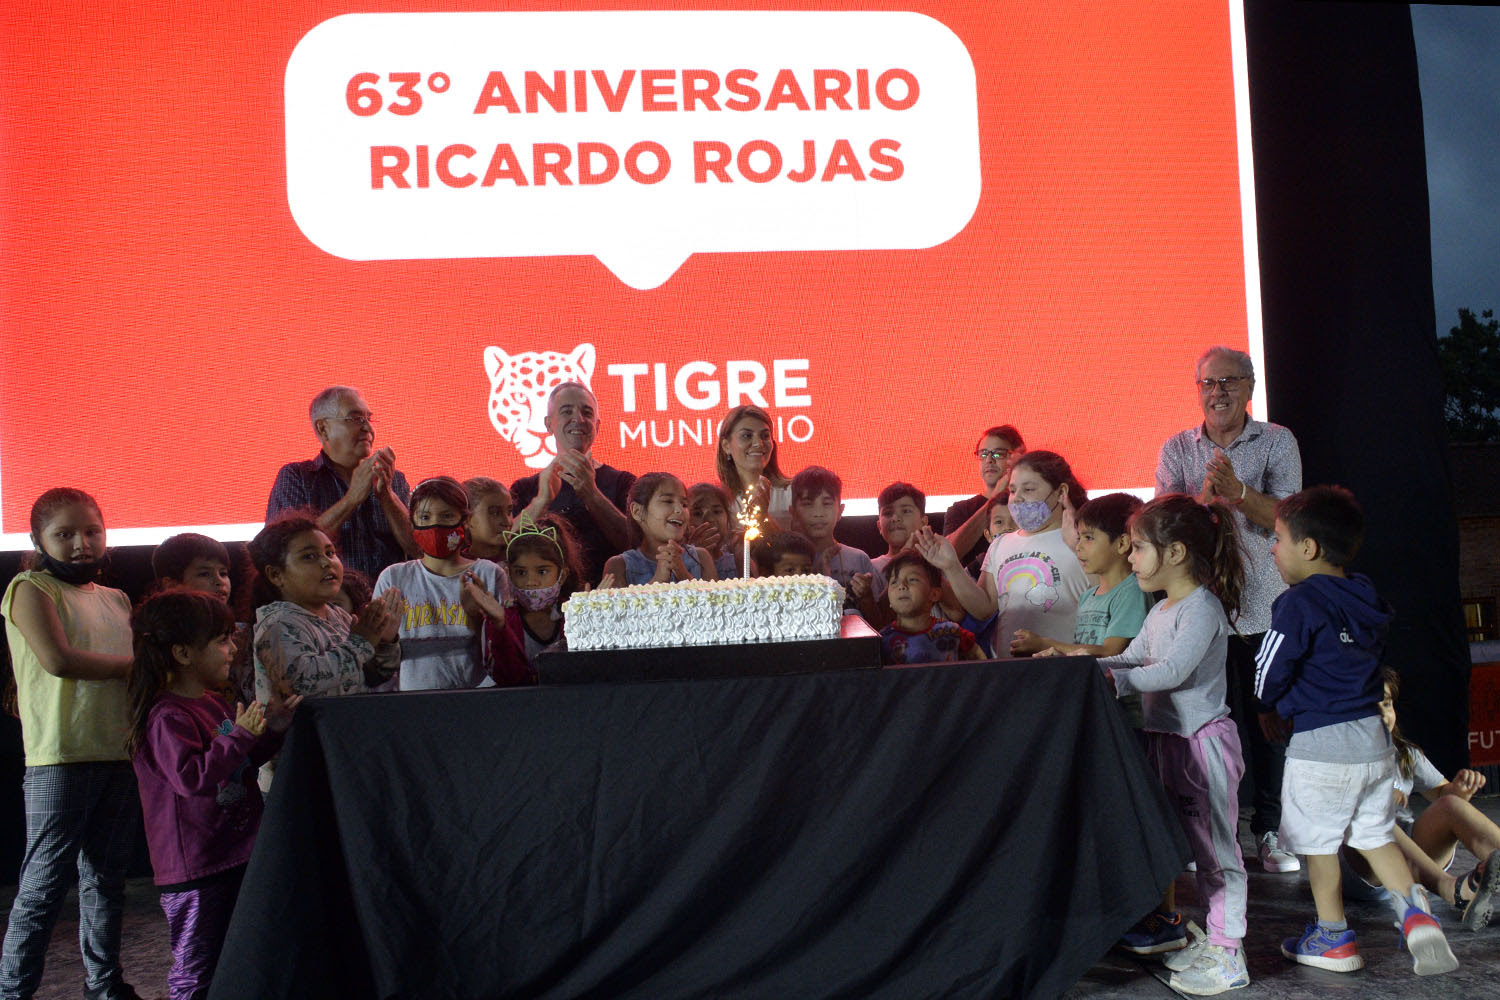 Ricardo Rojas celebró su 63° aniversario con música, baile y mucho entretenimiento